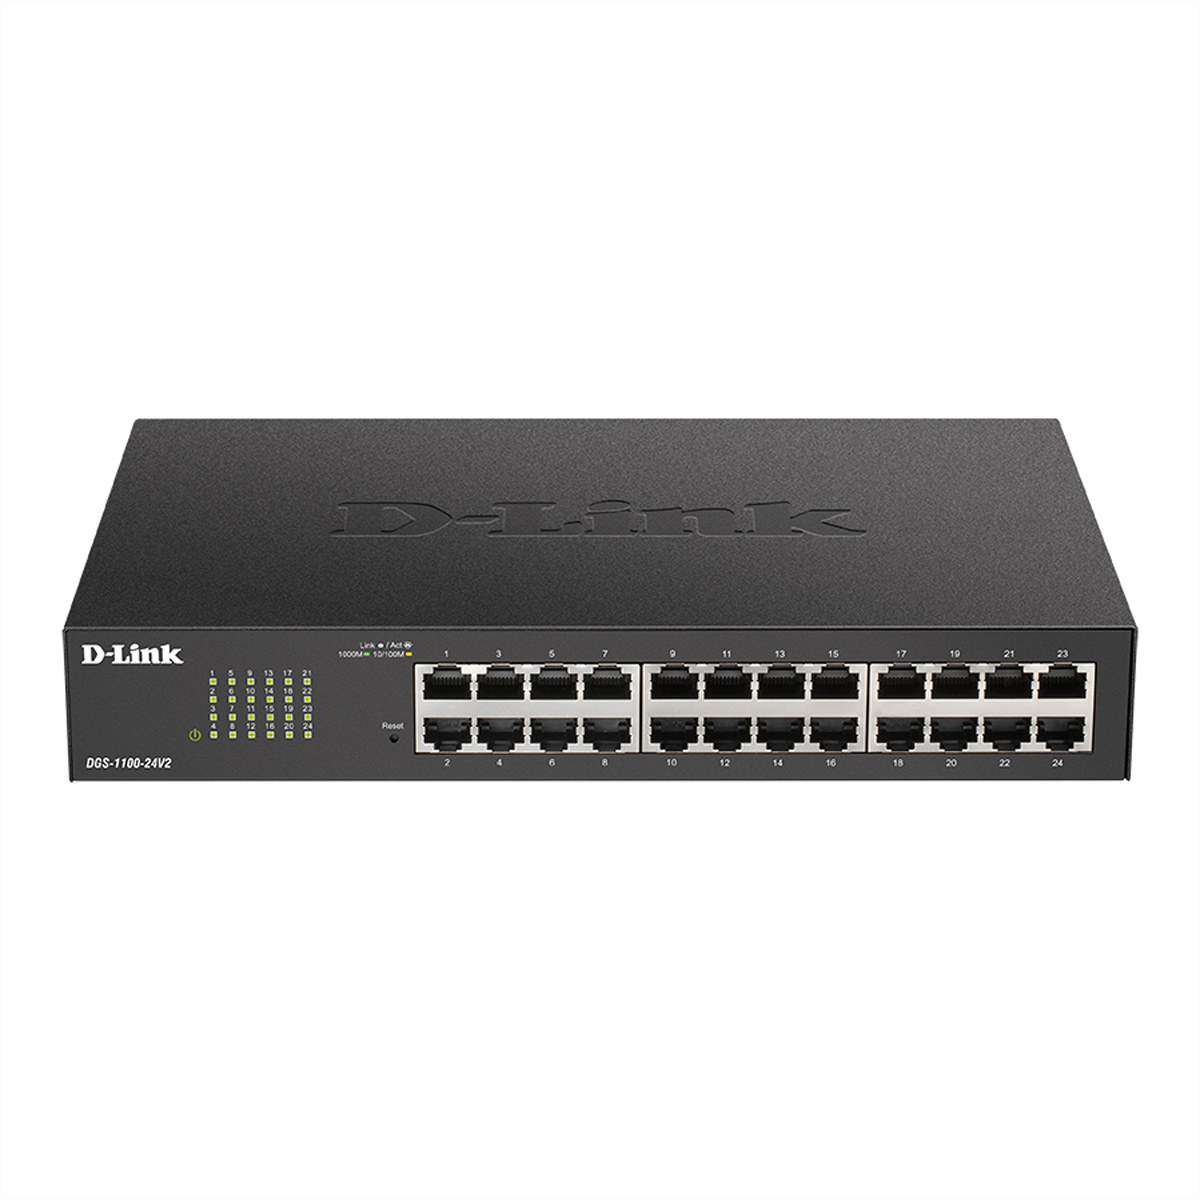 D-LINK DGS-1100-24V2 Ethernet 24-Port Switch Switch Gigabit